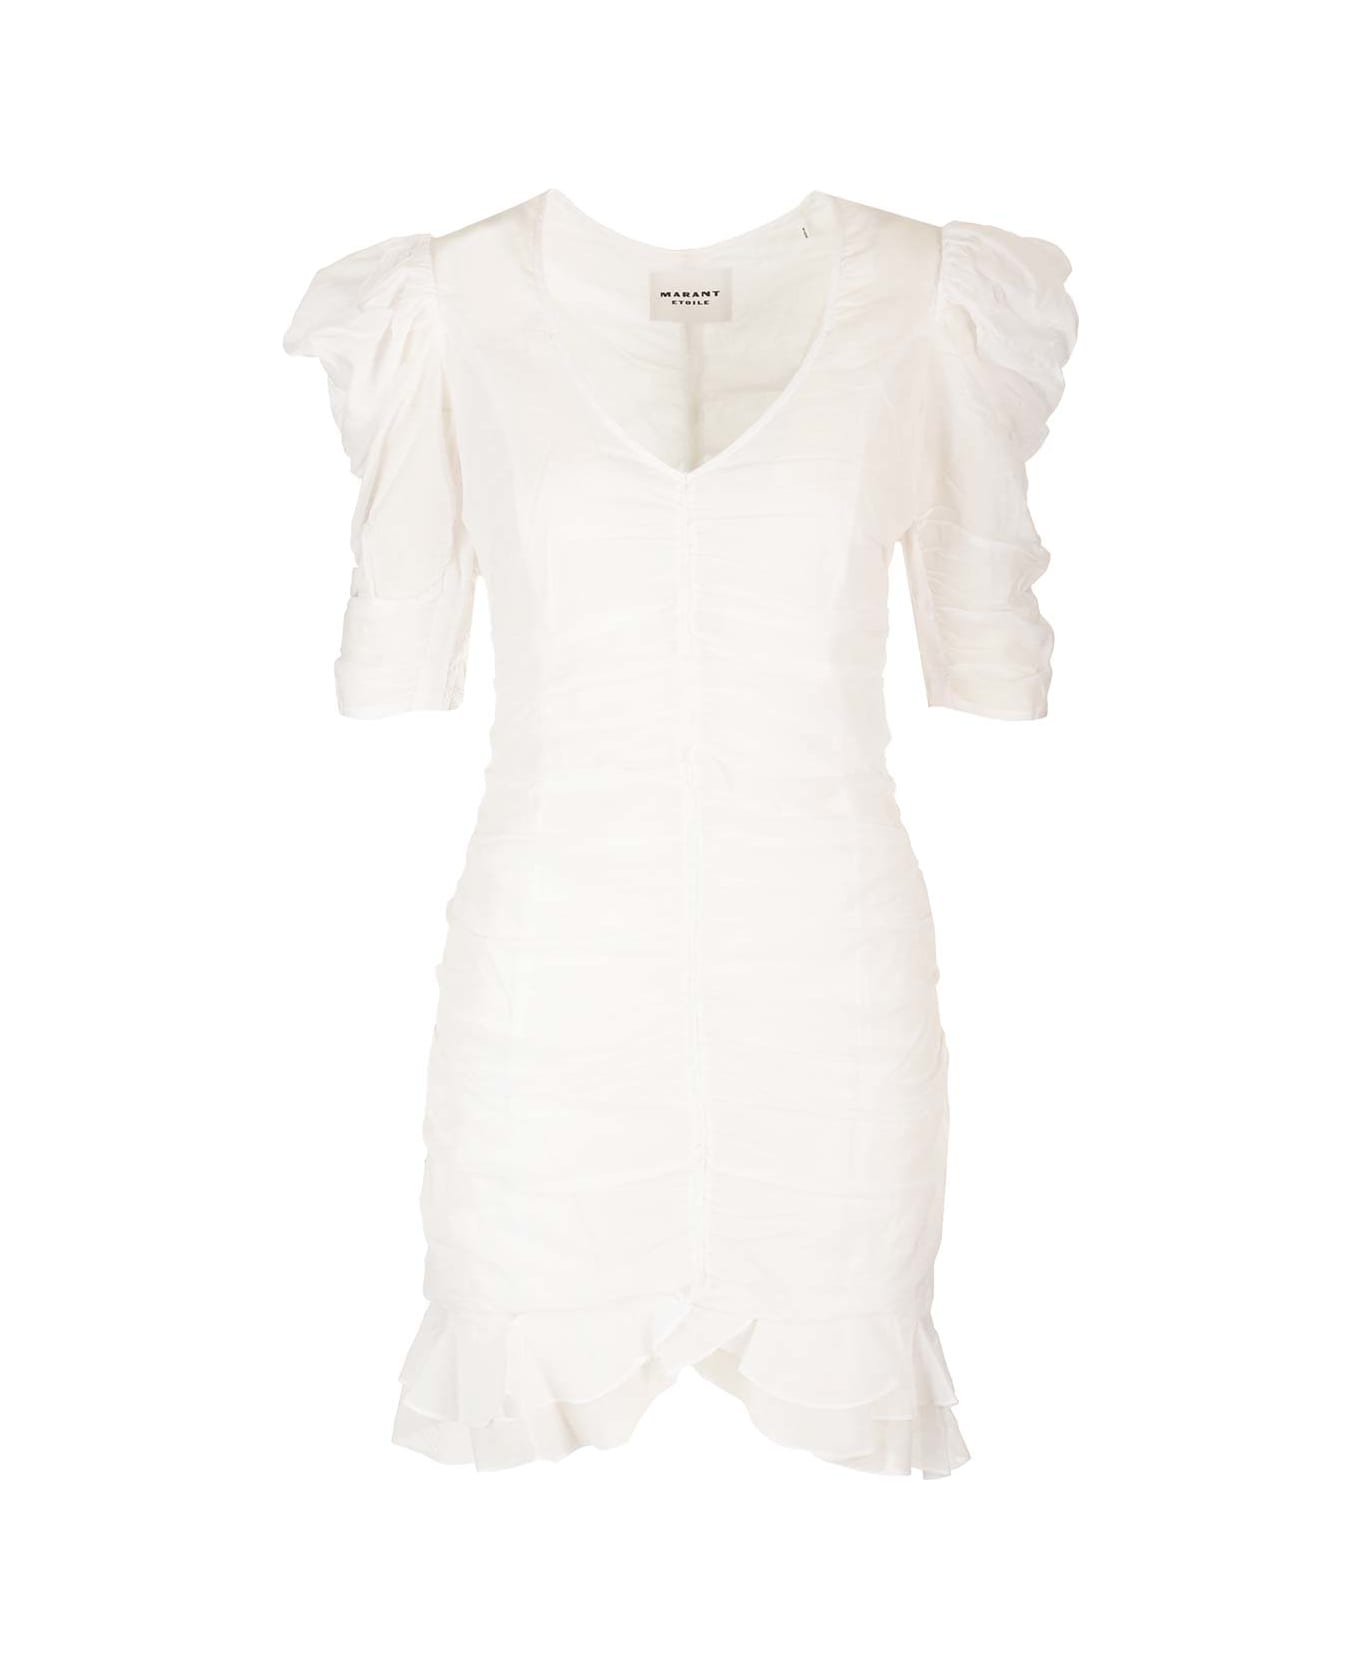 Marant Étoile Sireny Mini Dress - White